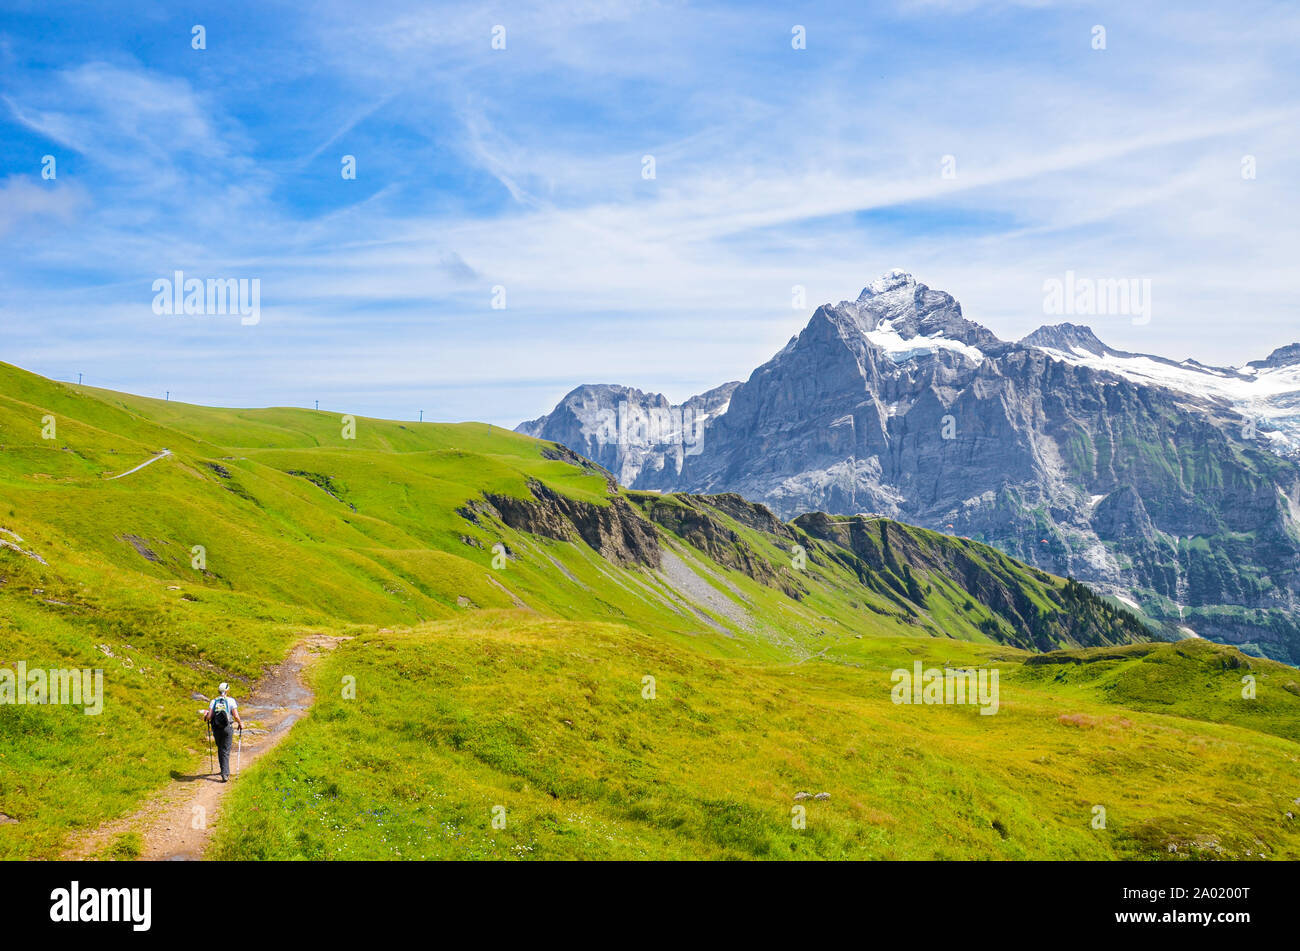 Wanderer in den Schweizer Alpen wandern mit Wanderstöcken. Berühmten Berge Jungfrau, Eiger und Mönch im Hintergrund. Grüne alpinen Sommer Landschaft. Nordic Walking. Aktivitäten im Freien. Stockfoto